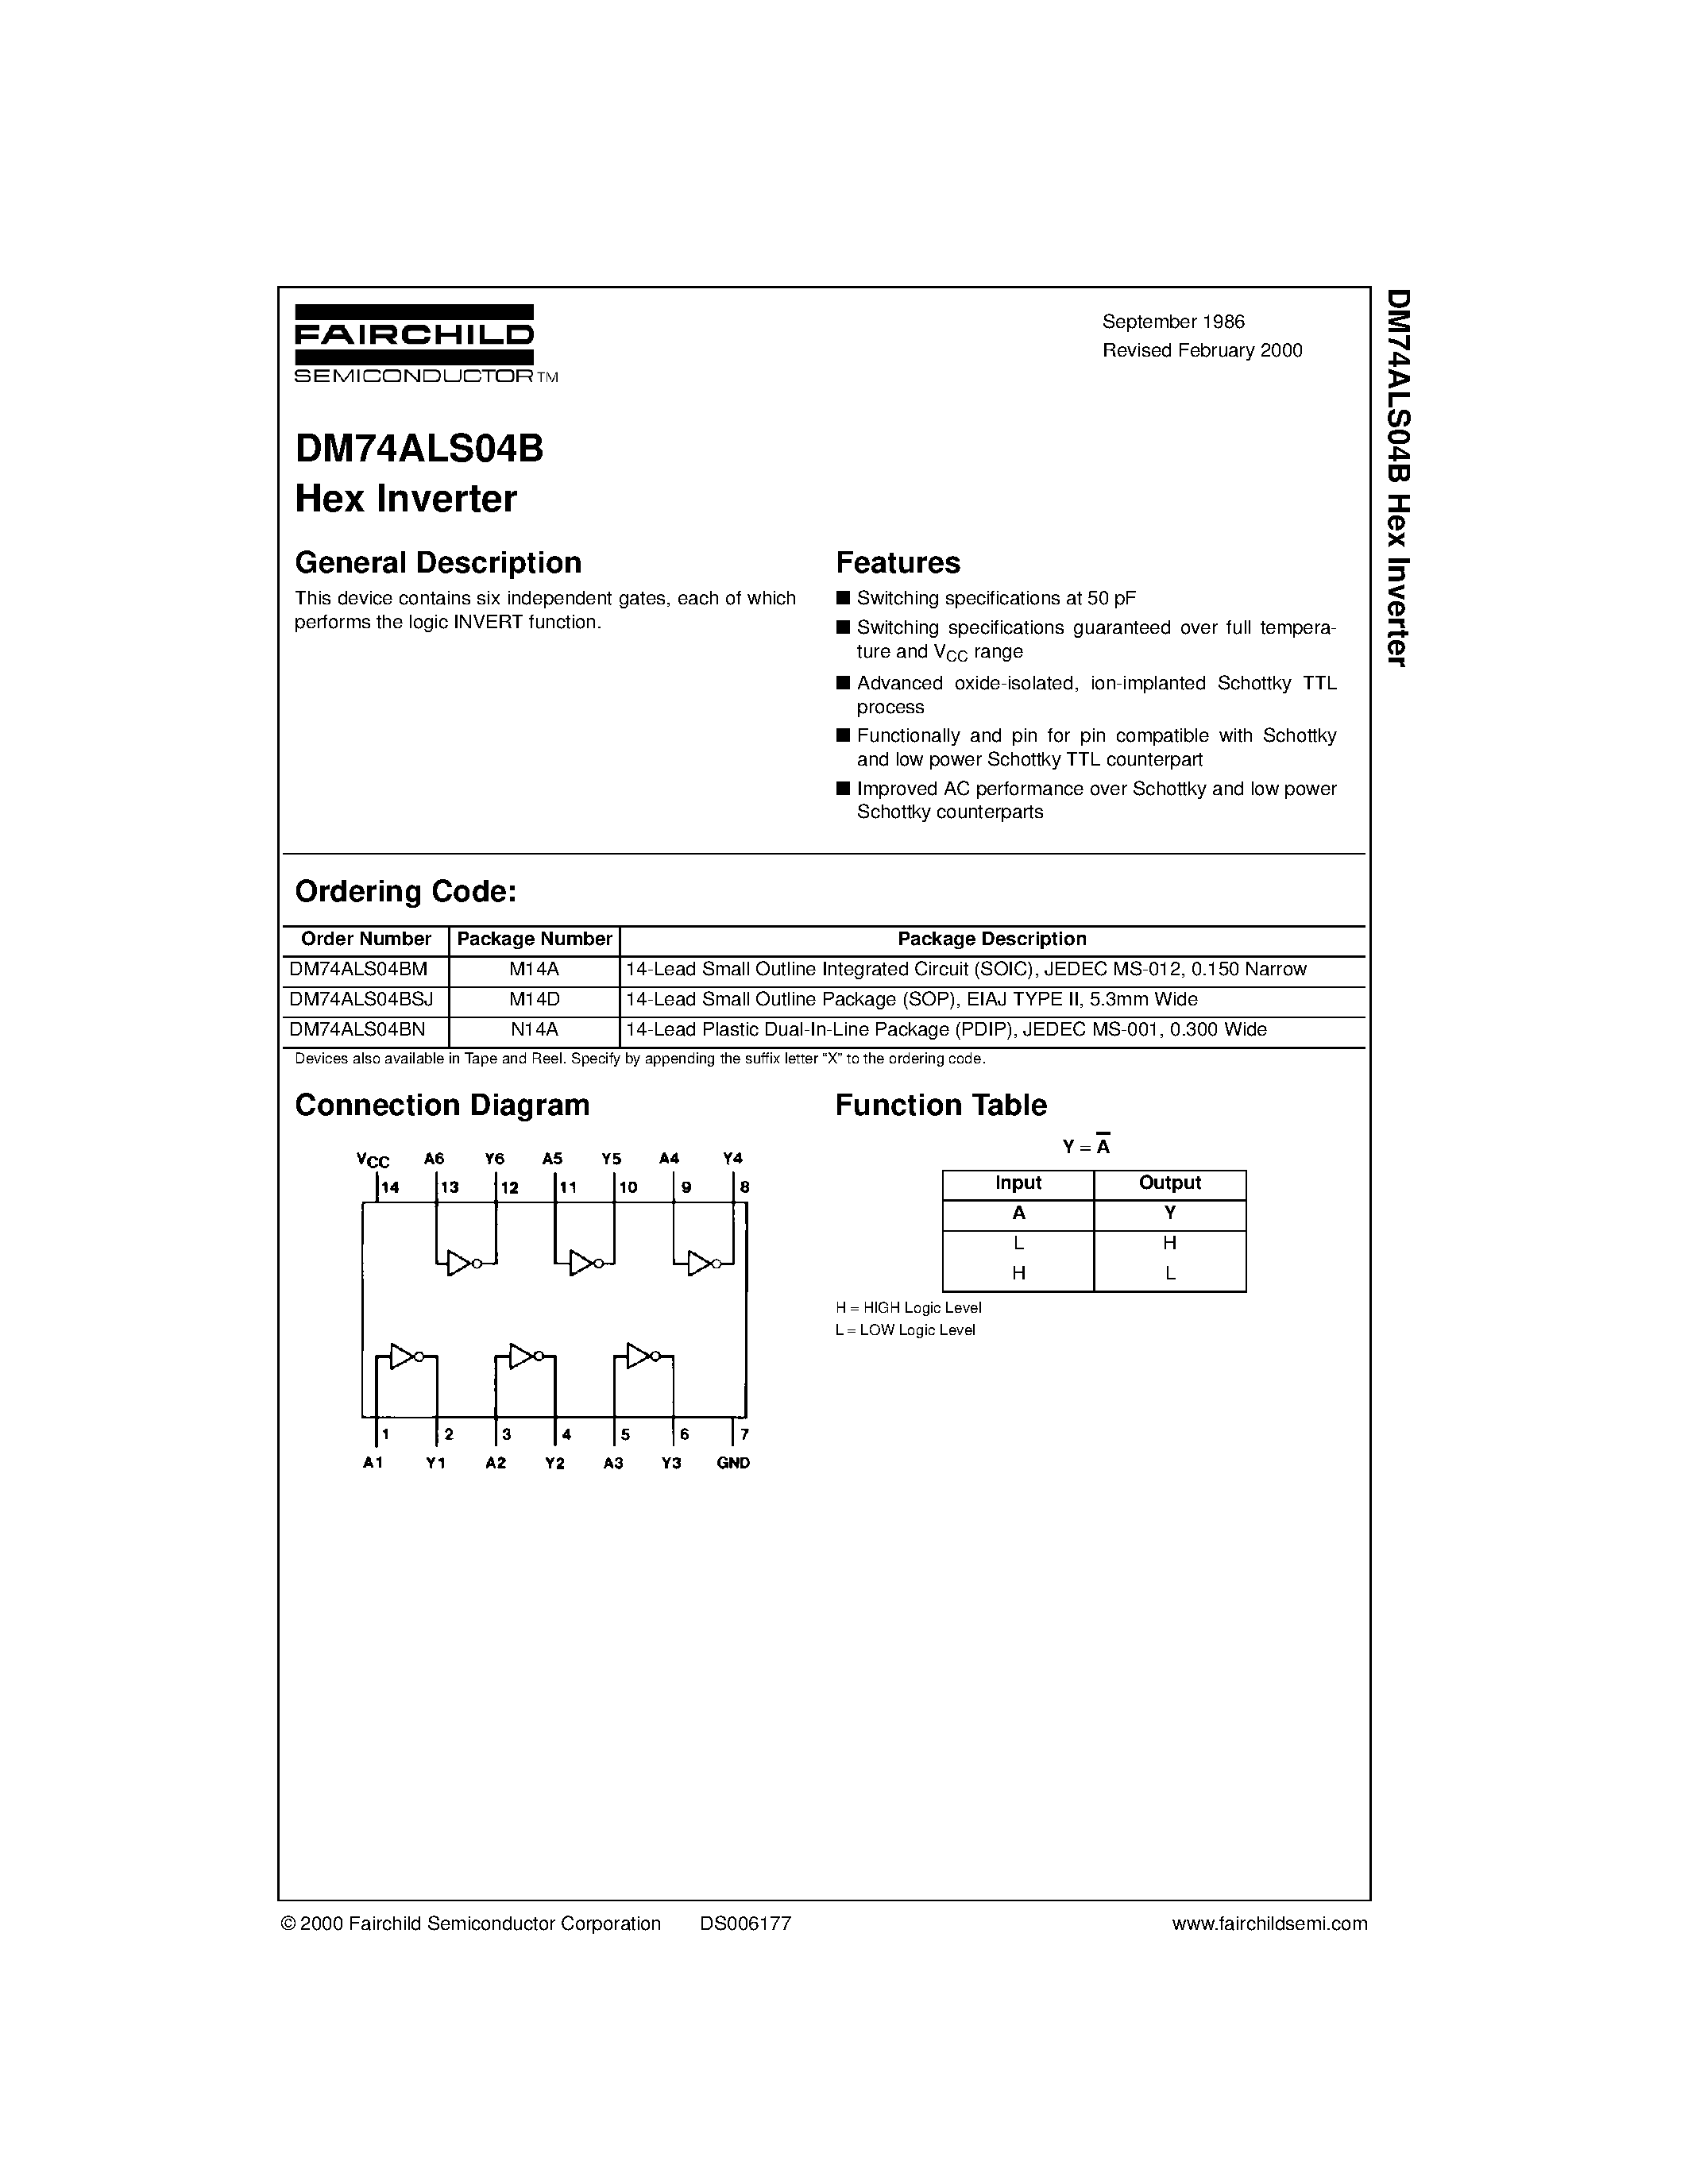 Datasheet DM74ALS04B - Hex Inverter page 1